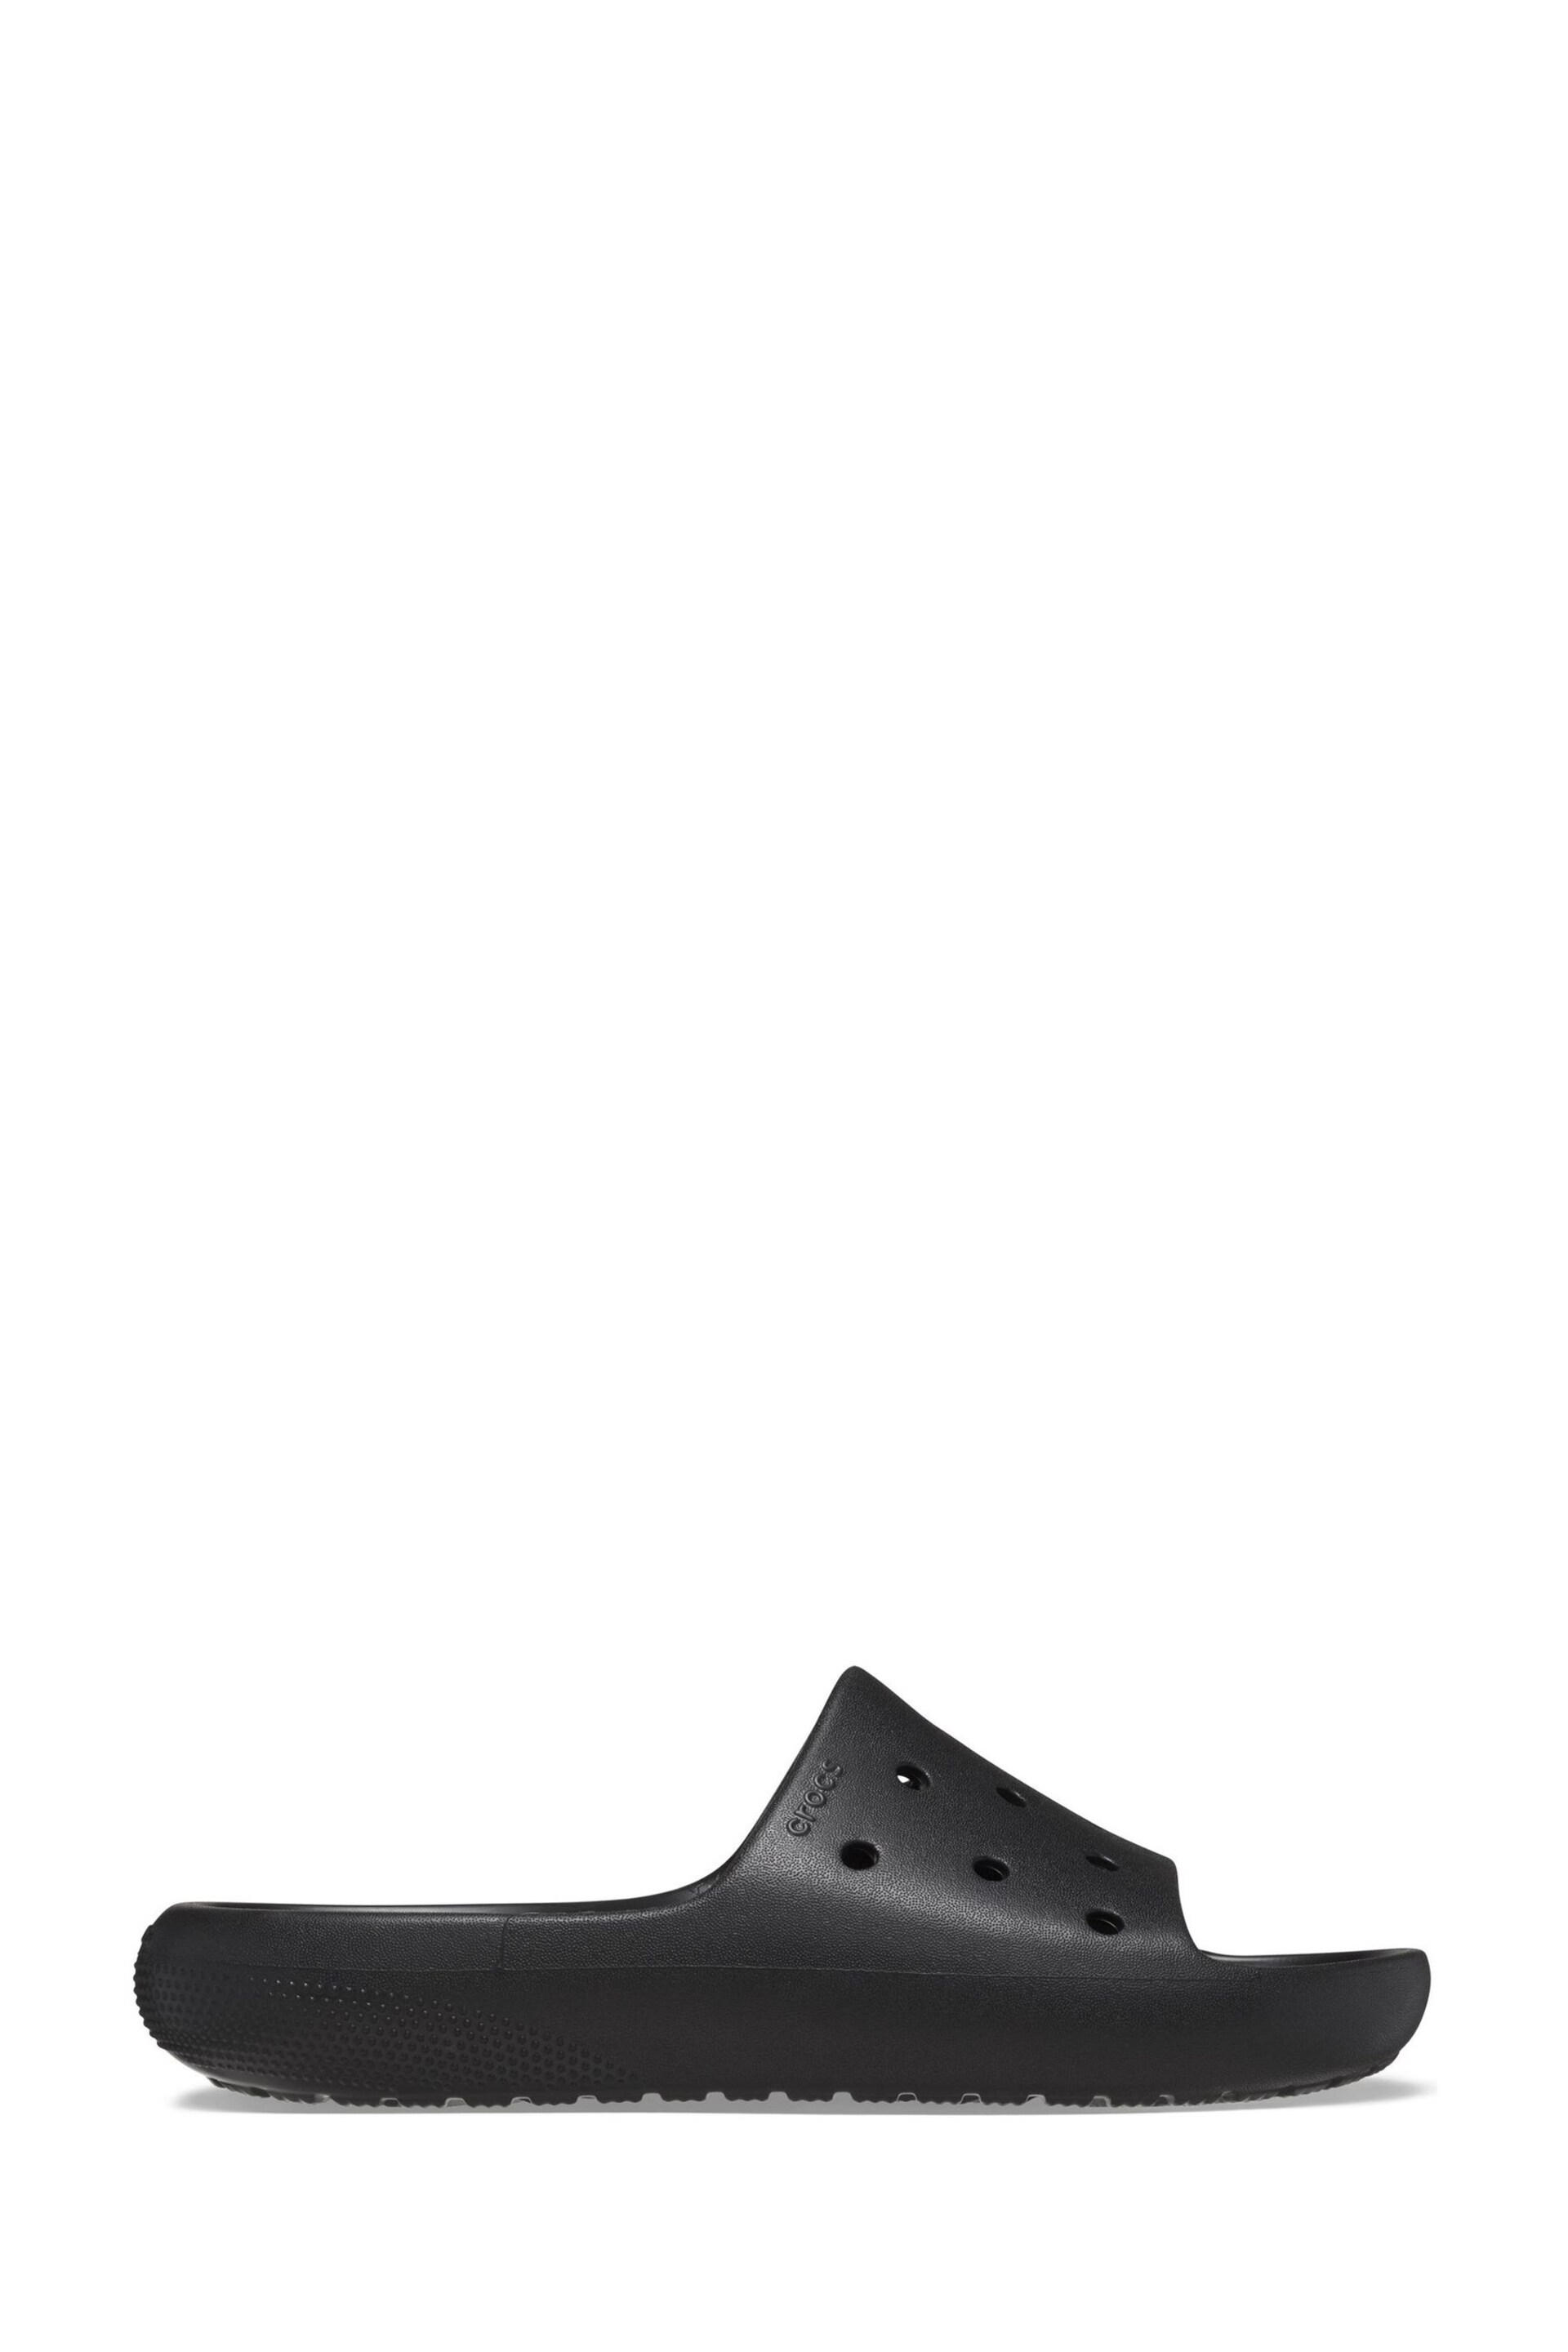 Crocs Classic Unisex Sandals - Image 5 of 6